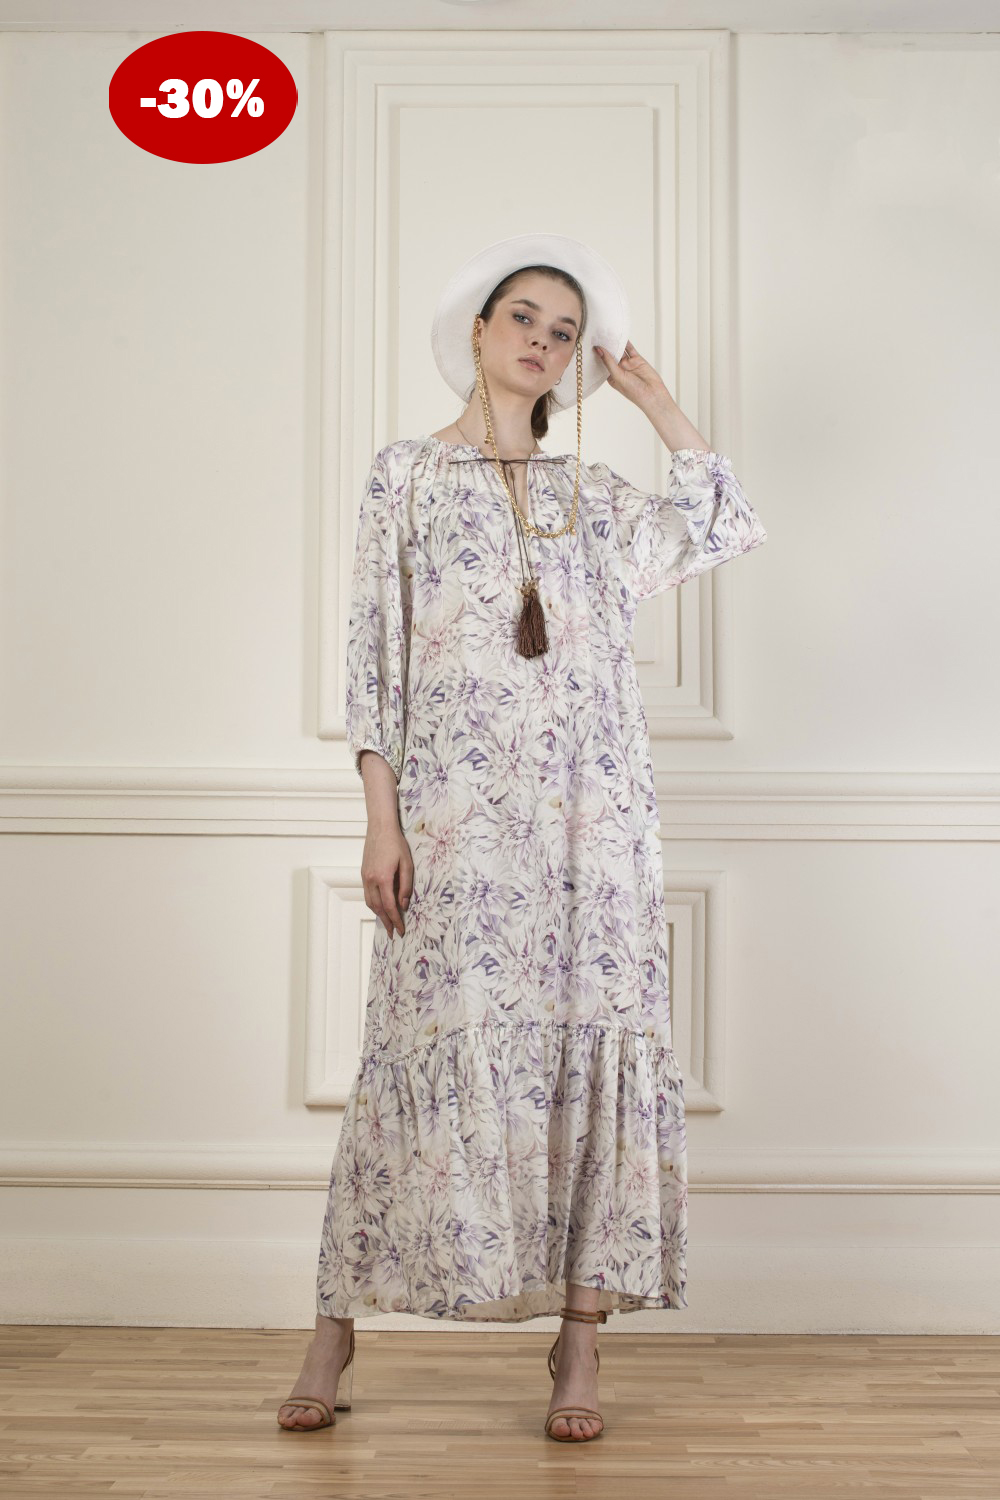 Купить платье из натурального шелка по адекватной цене от Dolcedonna: про стильную одежду простыми словами